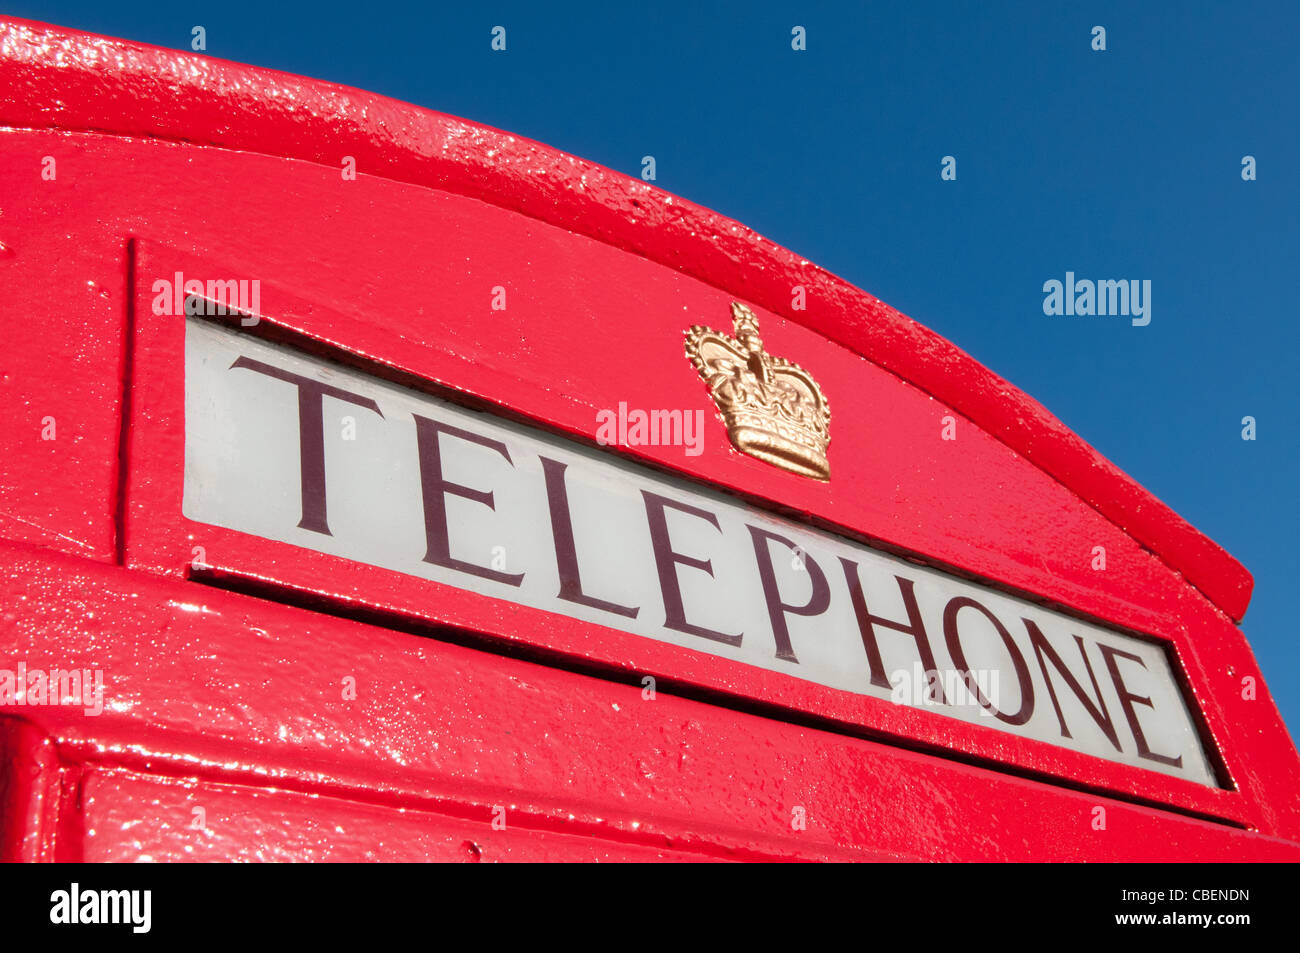 Boîte de téléphone rouge Détail et ciel bleu, London, England, UK Banque D'Images